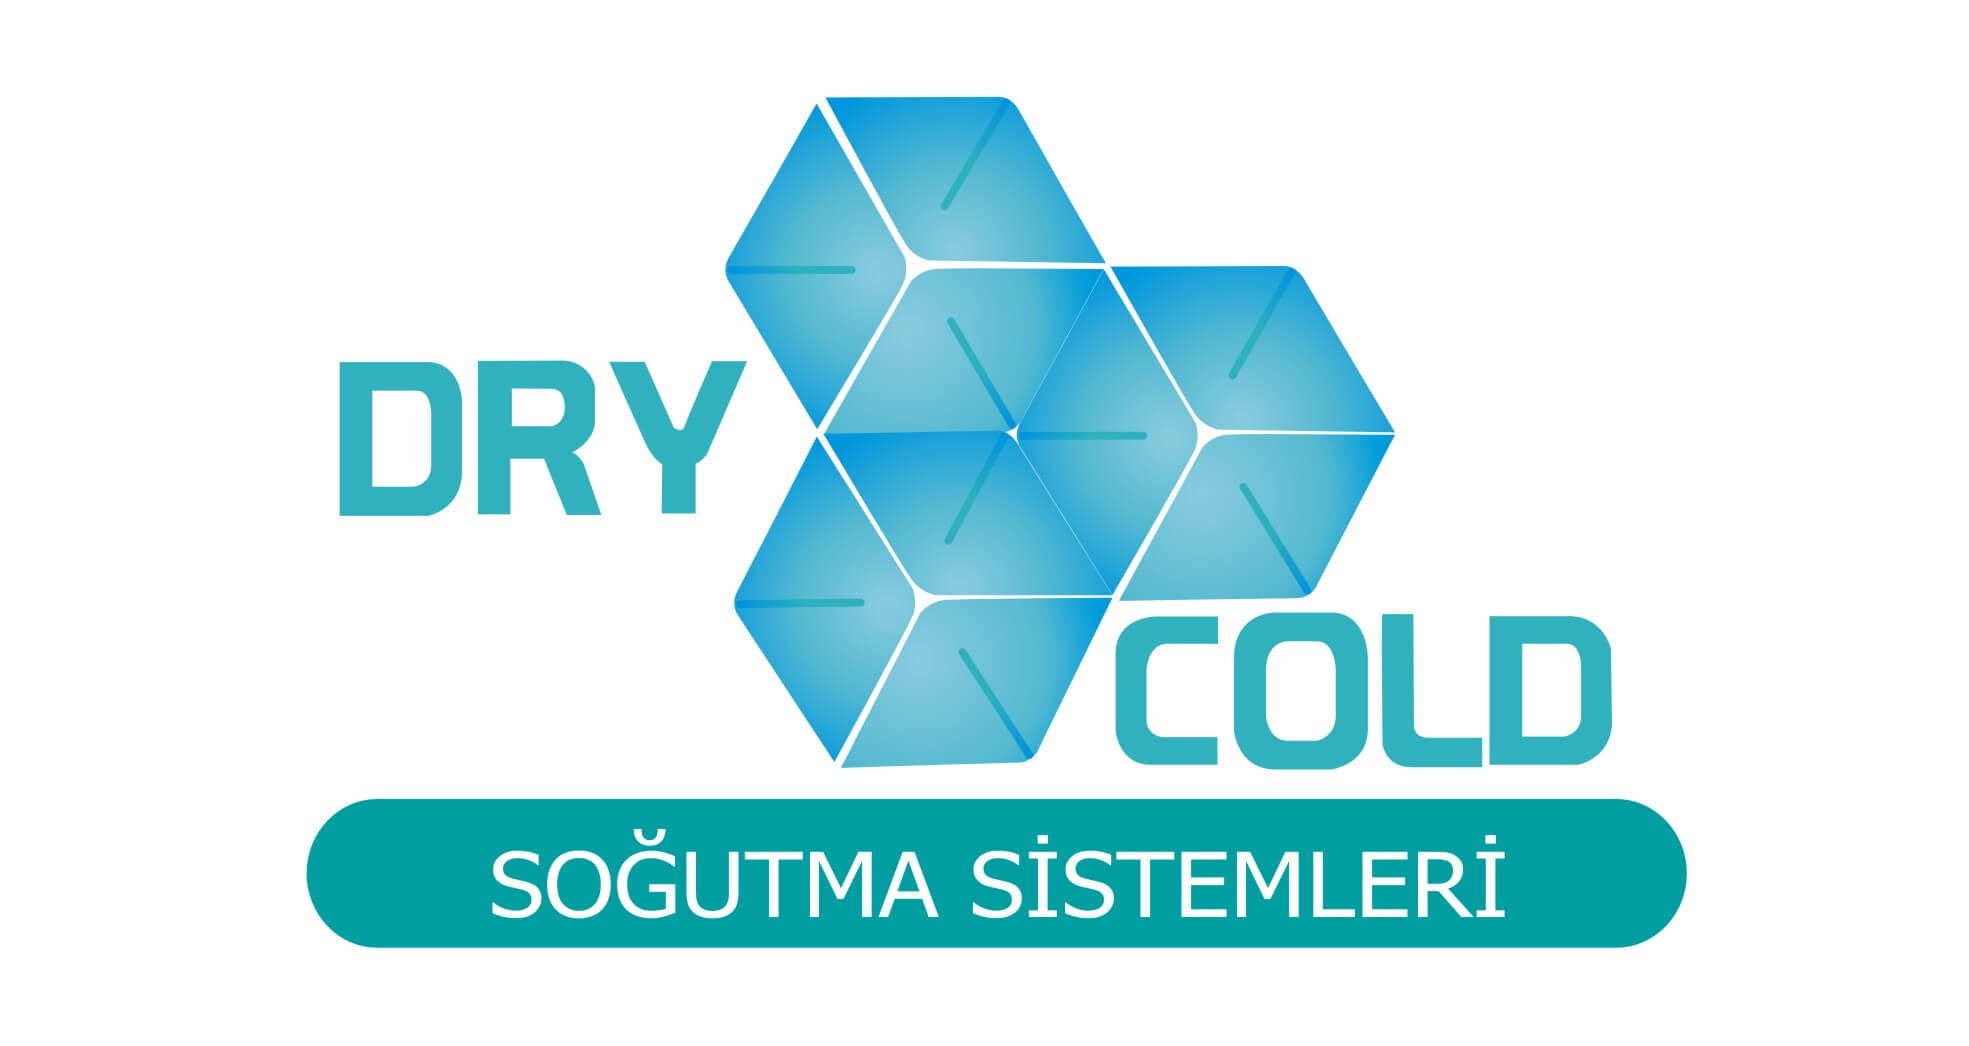 DRYCOLD SOĞUTMA SİSTEMLERİ logo